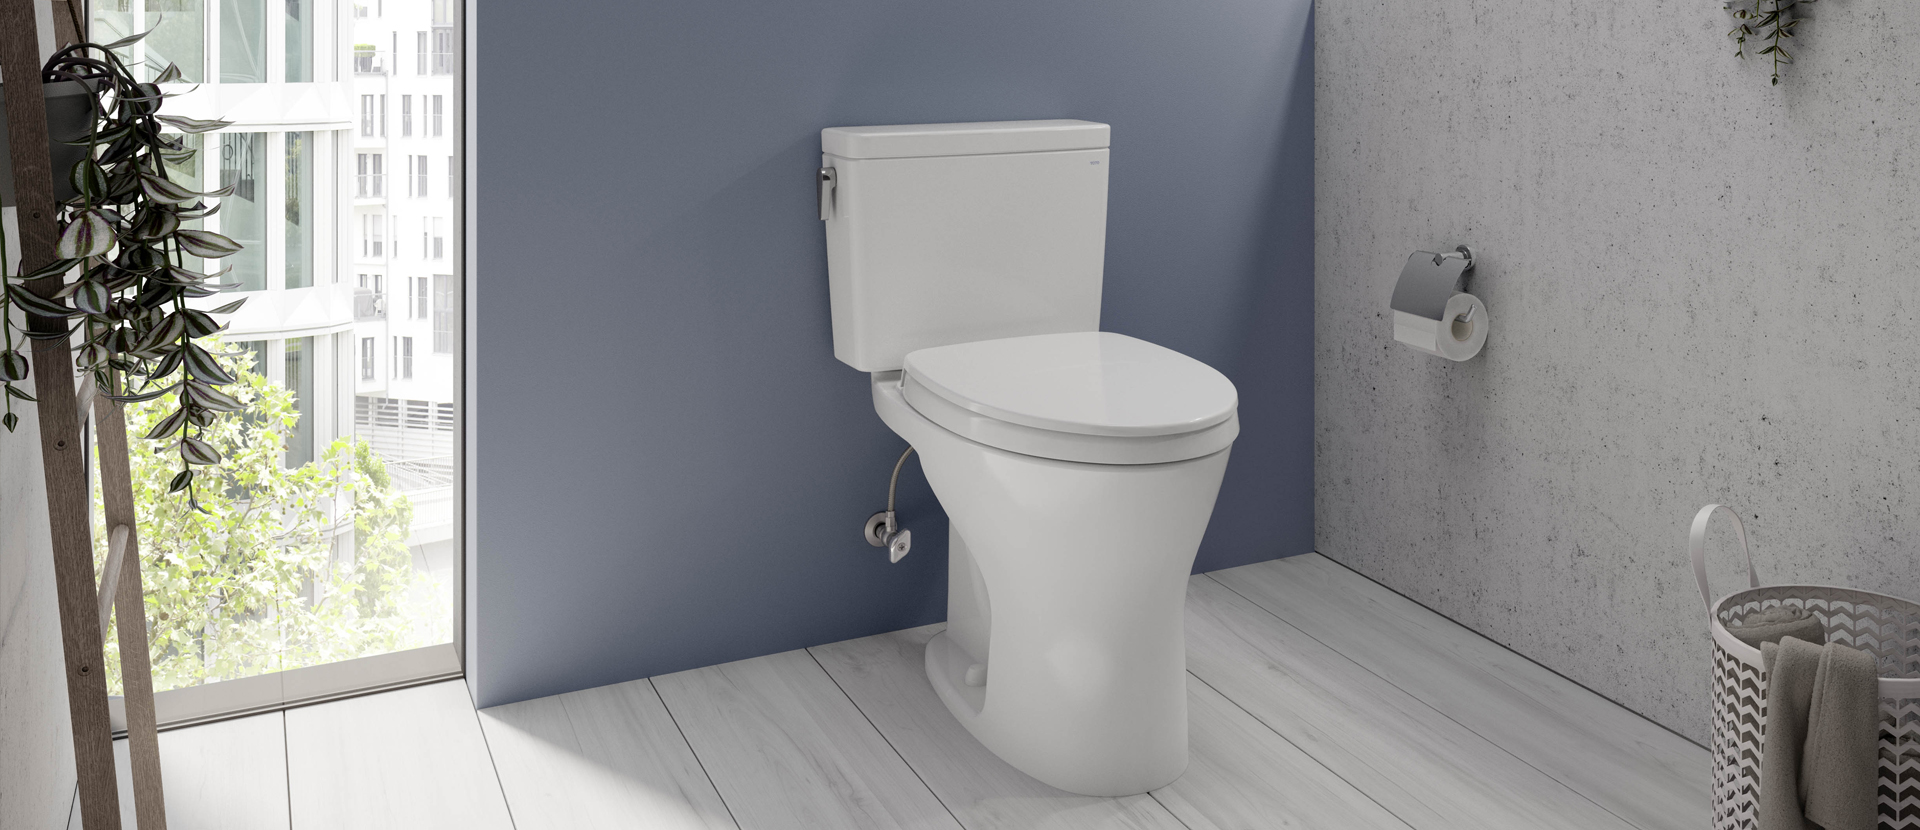 Image of TOTO's Drake Toilet.